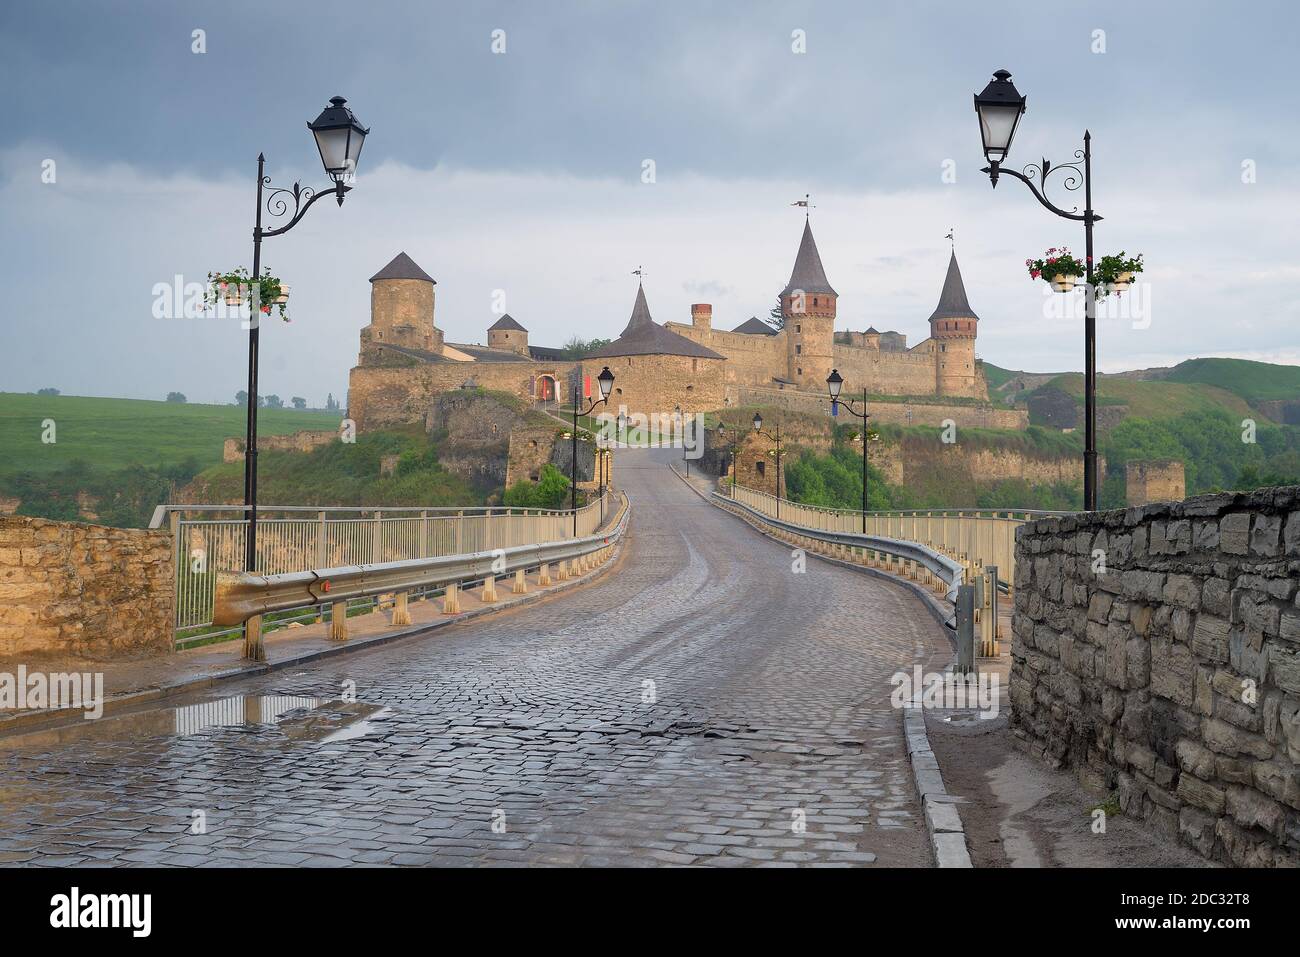 Strada che conduce al castello medievale. Fortificazione punto di riferimento storico. Paesaggio urbano al mattino. Kamenetz-Podolsk, Ucraina, Europa Foto Stock